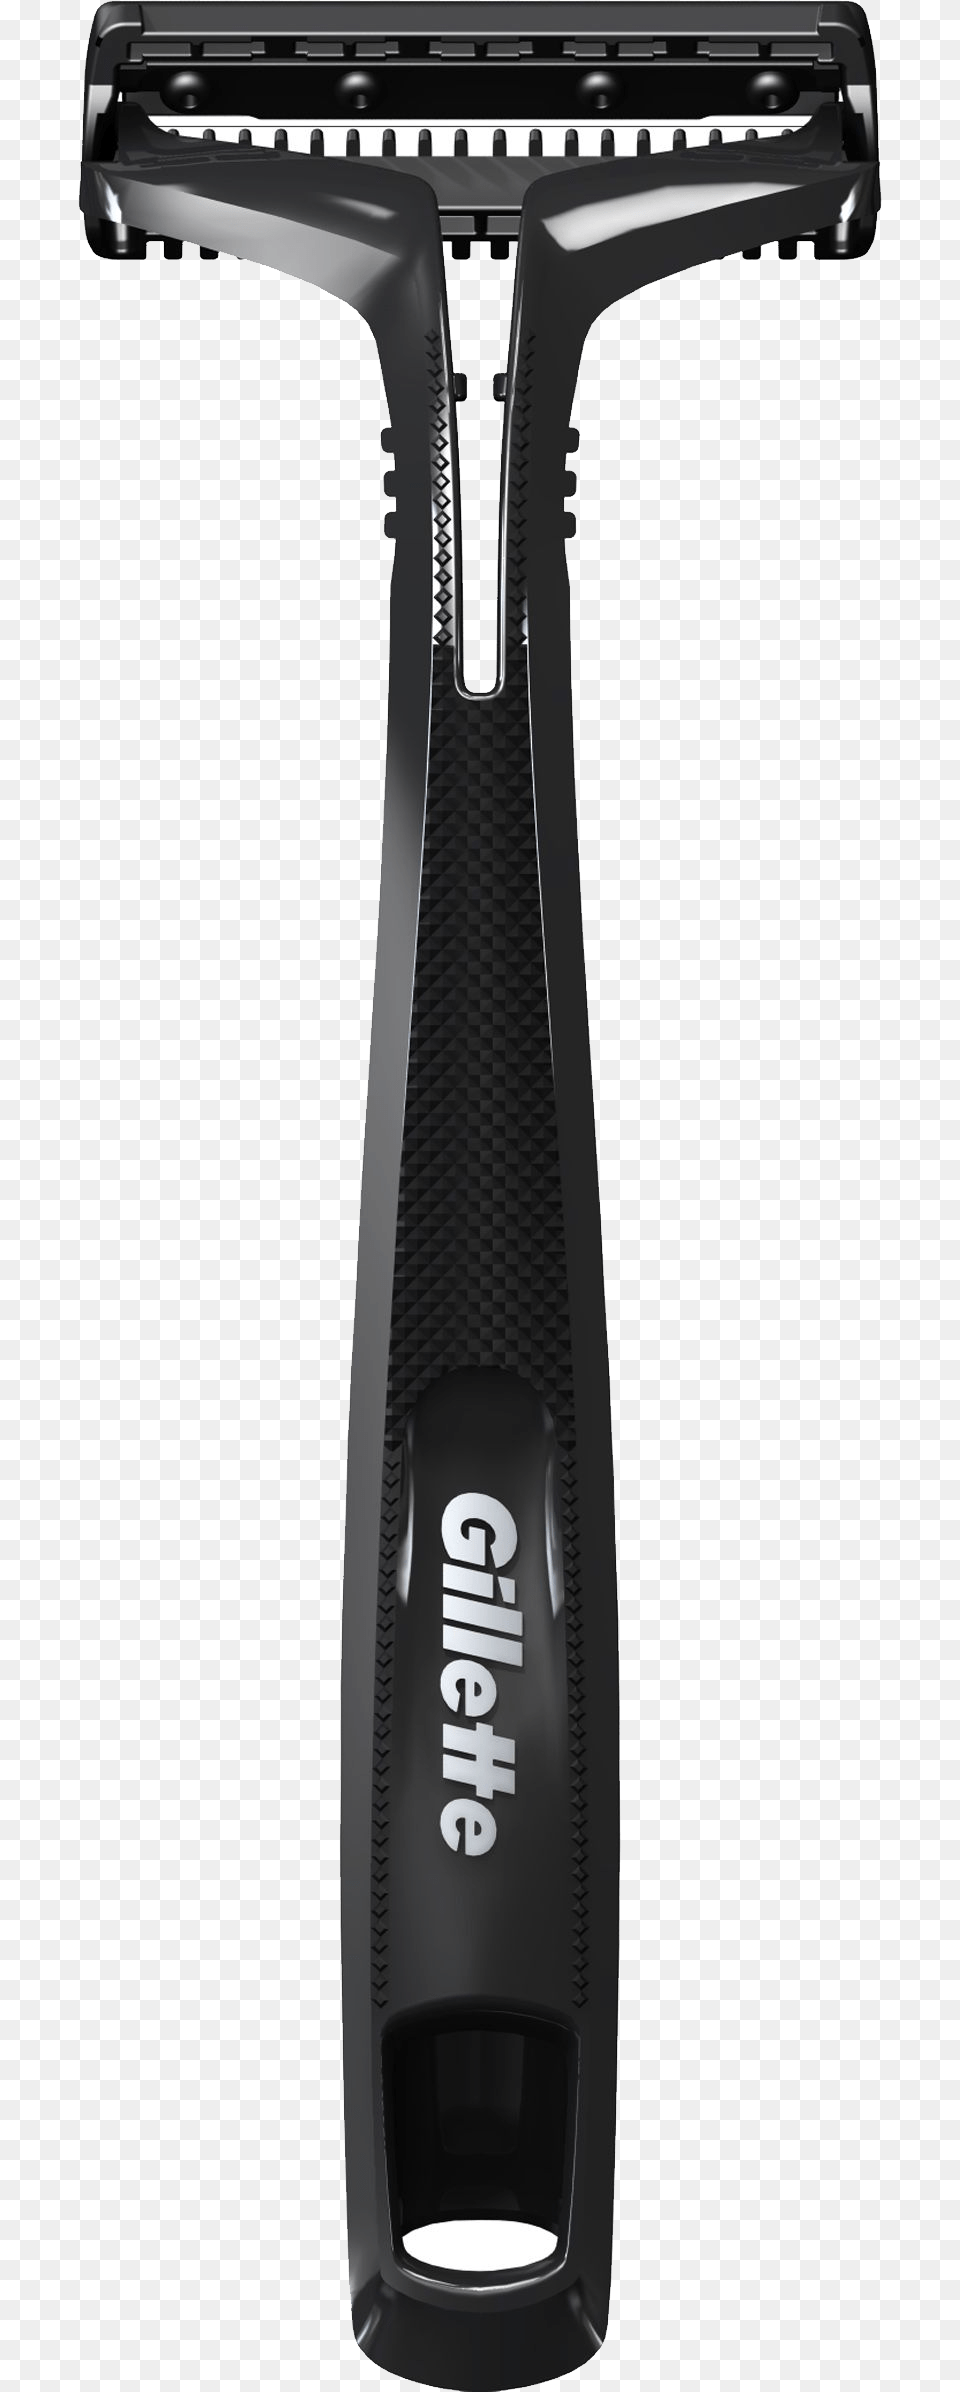 Gillette Razor Black Close Up, Blade, Weapon Png Image